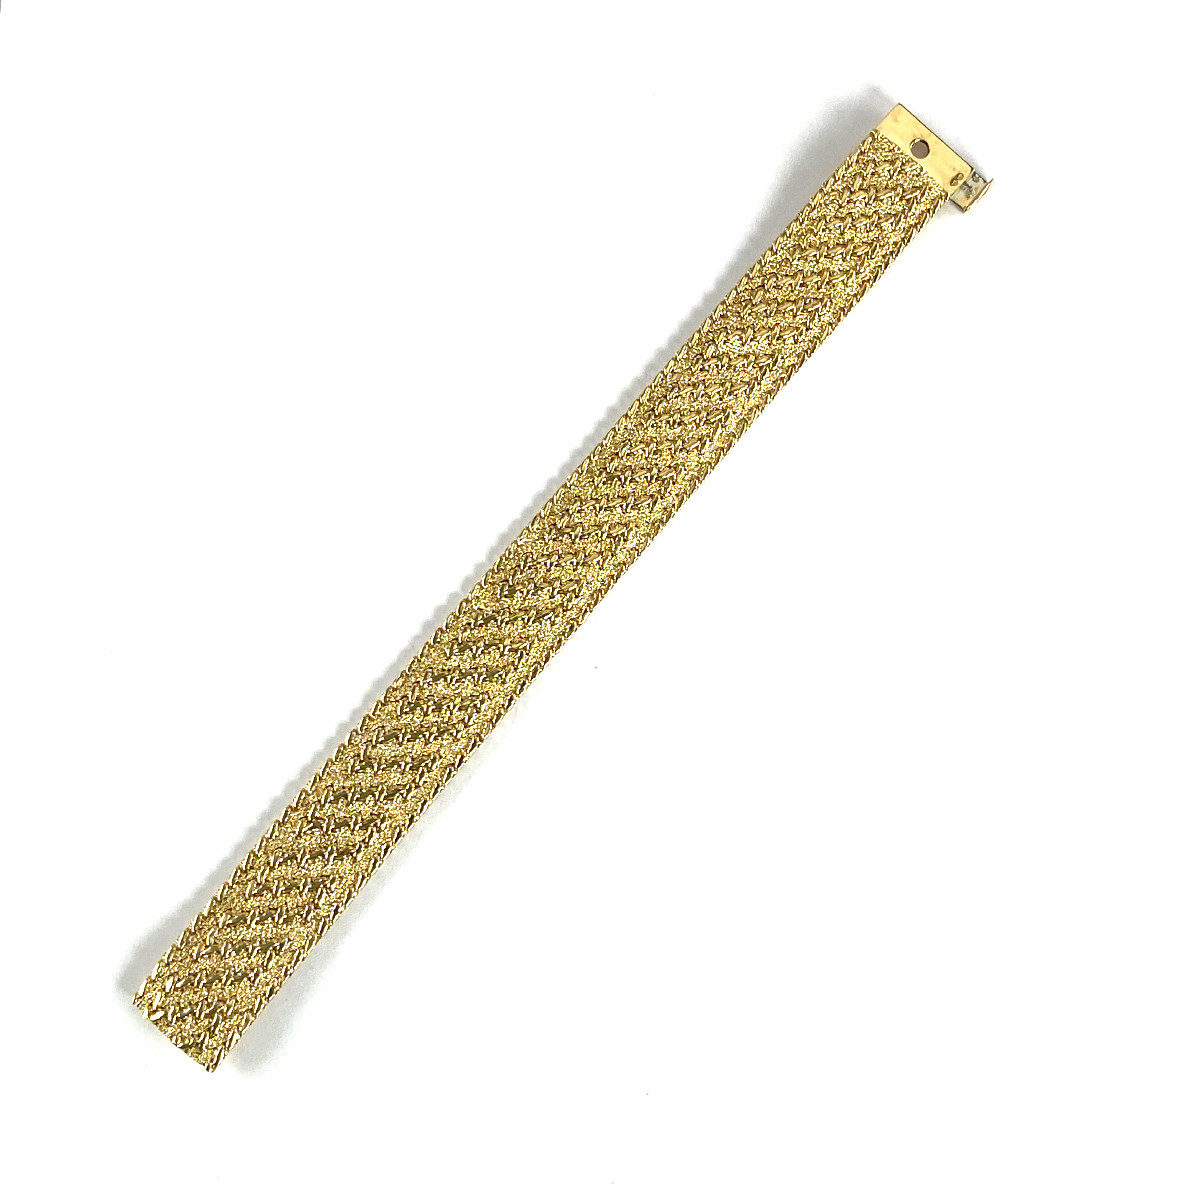 Bracelet d'occasion or 750 jaune maille polonaise 19 cm - vue 3